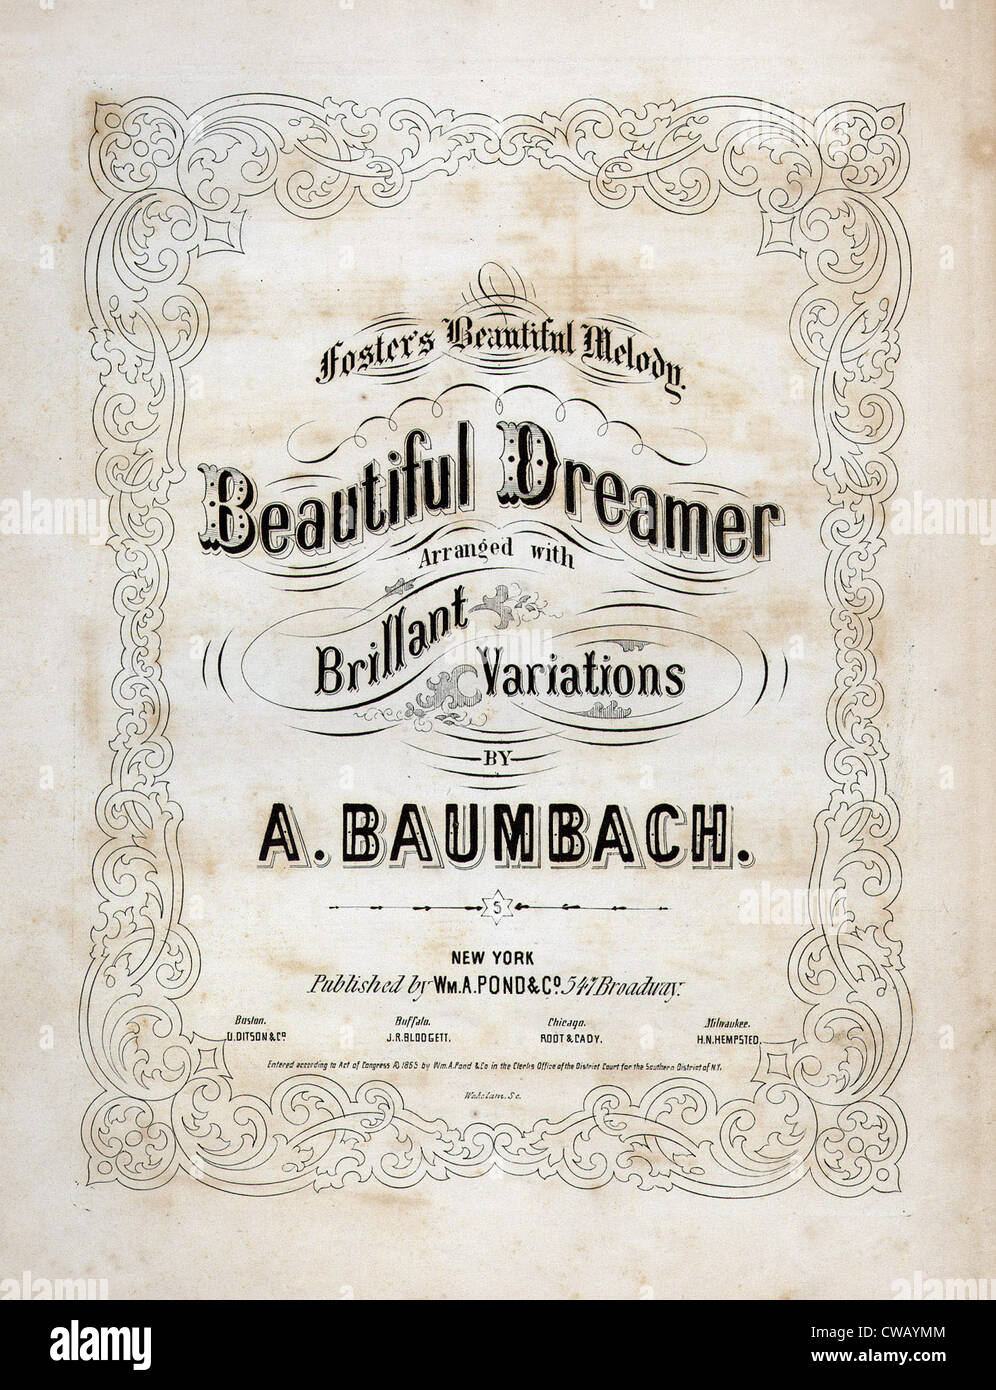 Schöne Träumer von Stephen Foster, arrangiert von A. Baumbach, Noten Titelseite, 1864. Stockfoto